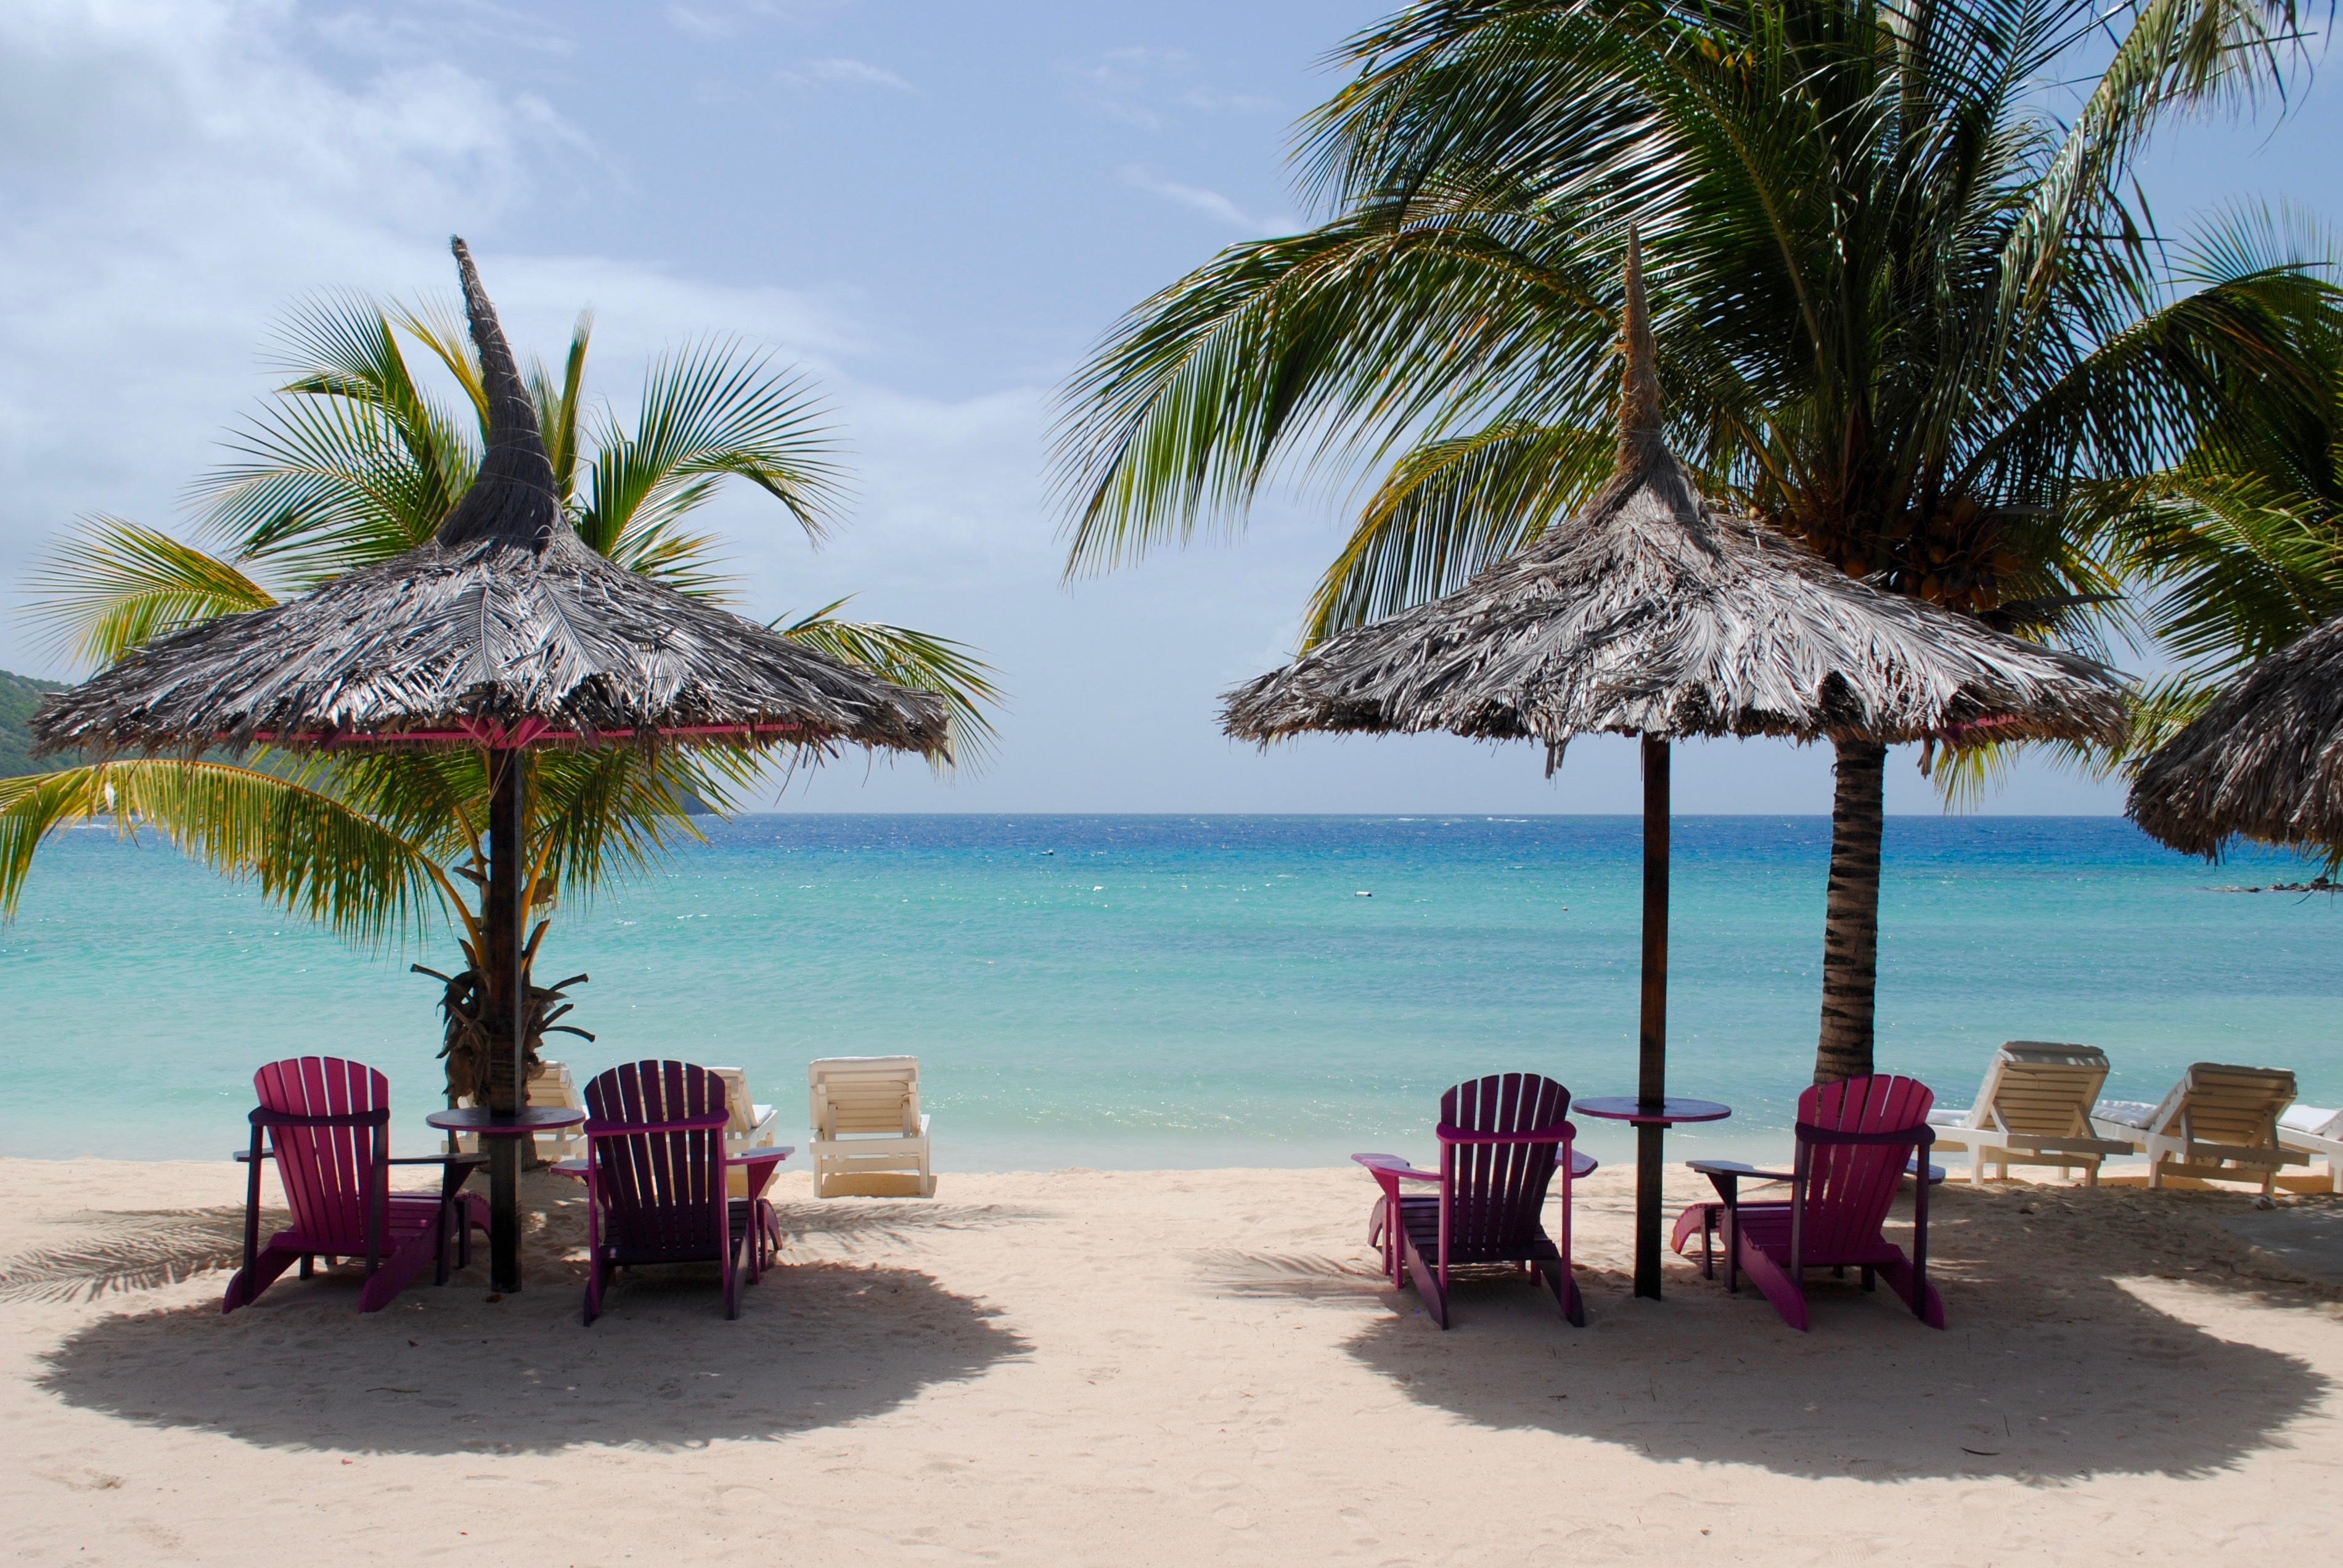 Барбадос - пляжный отдых, достопримечательности, культурные особенности, кухня, шопинг, райское место для отдыхающих, спа туризм, виндсерфинг